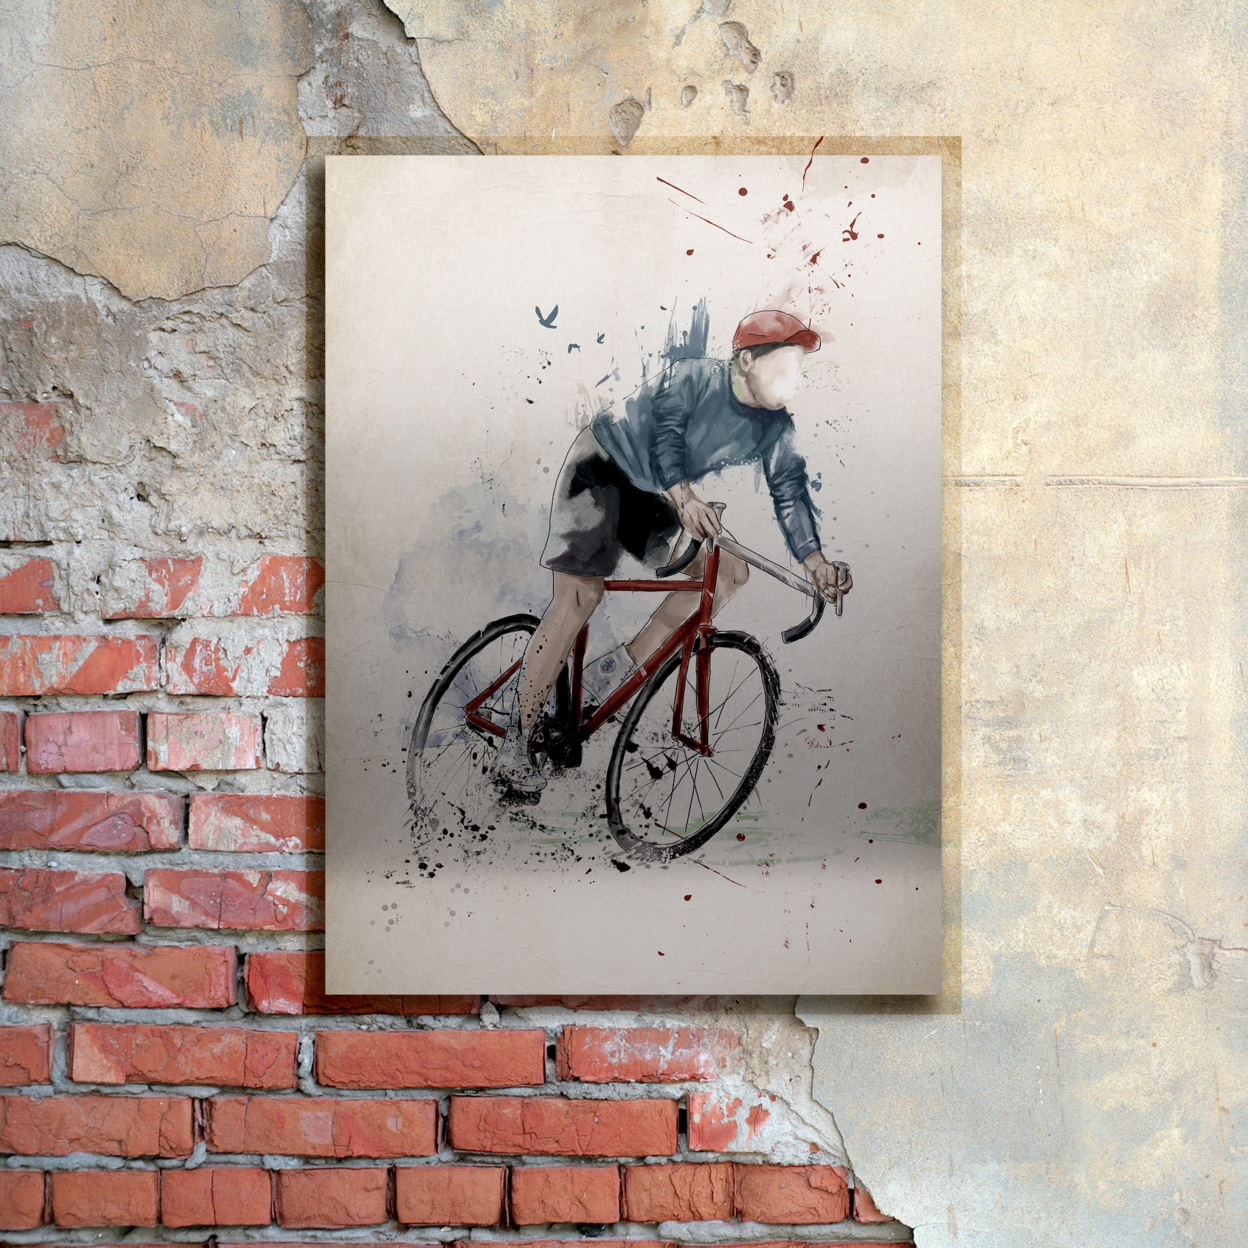 Balazs Solti 'I Want To Ride My Bicycle' Floating Brushed Aluminum Art 16 X 22